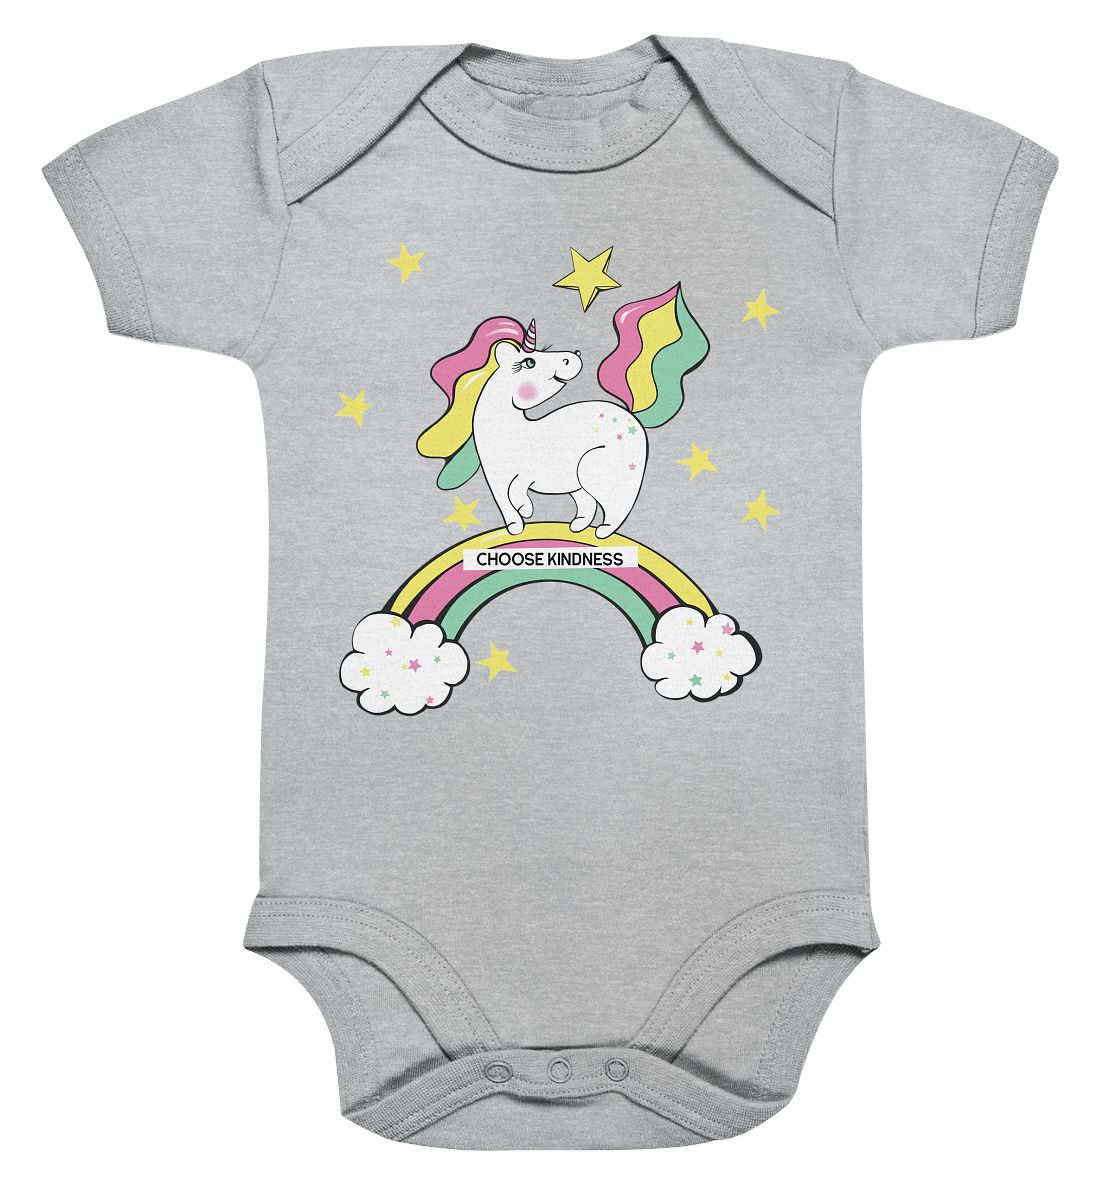 hübches Baby Body mit handgezeichneten unicorn Einhorn Pferdchen auf dem Regenbogen mit Sternchen in grau